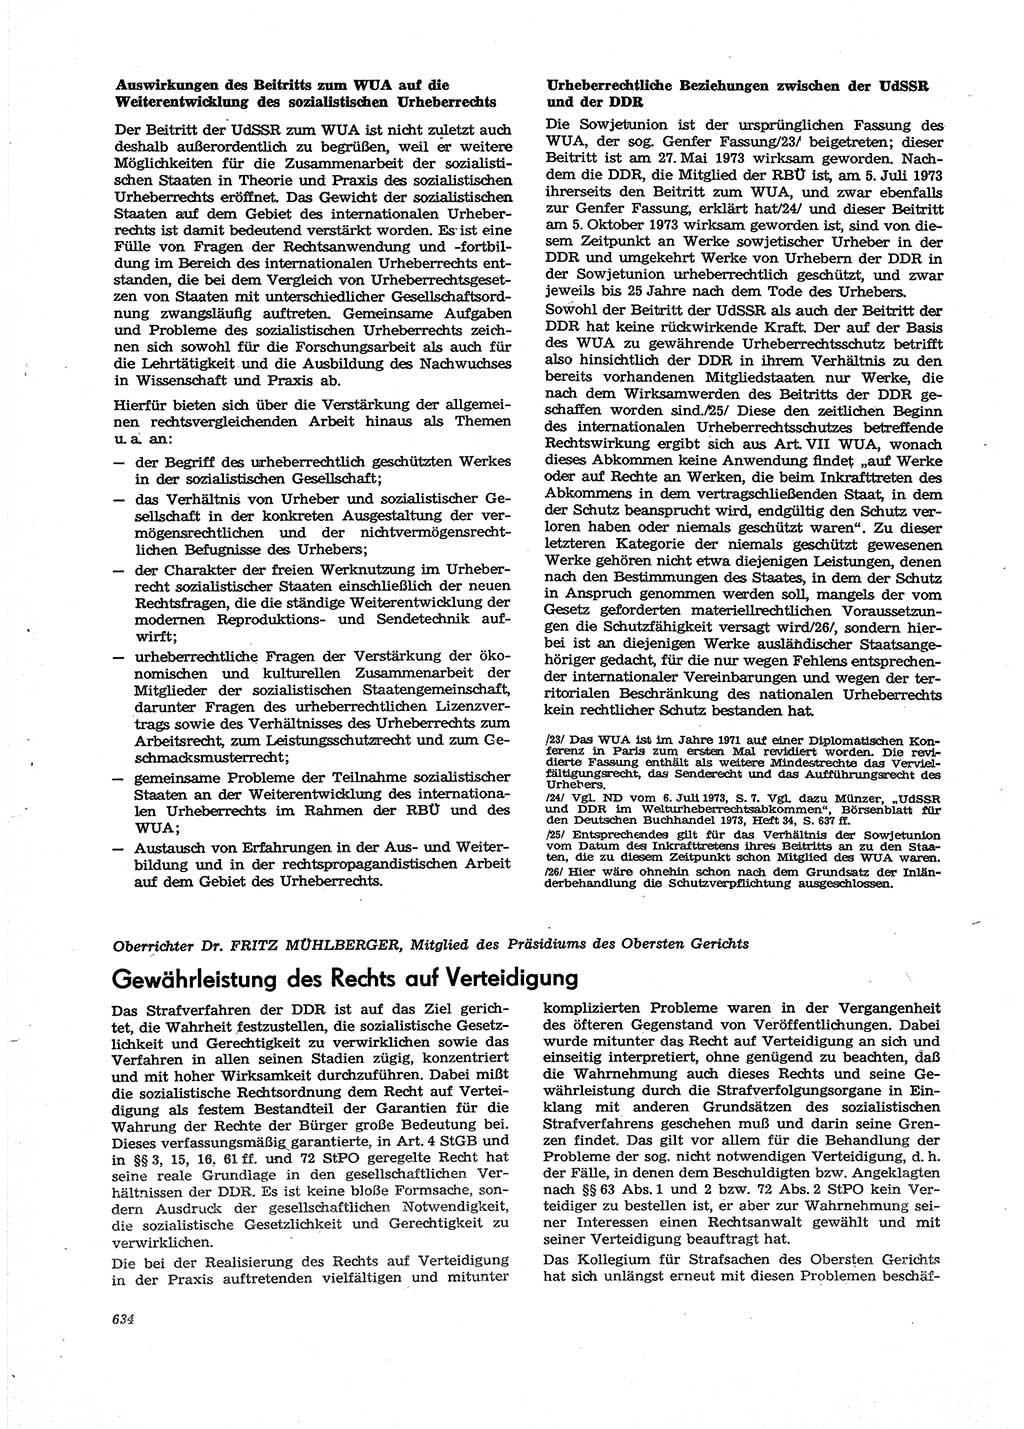 Neue Justiz (NJ), Zeitschrift für Recht und Rechtswissenschaft [Deutsche Demokratische Republik (DDR)], 27. Jahrgang 1973, Seite 634 (NJ DDR 1973, S. 634)